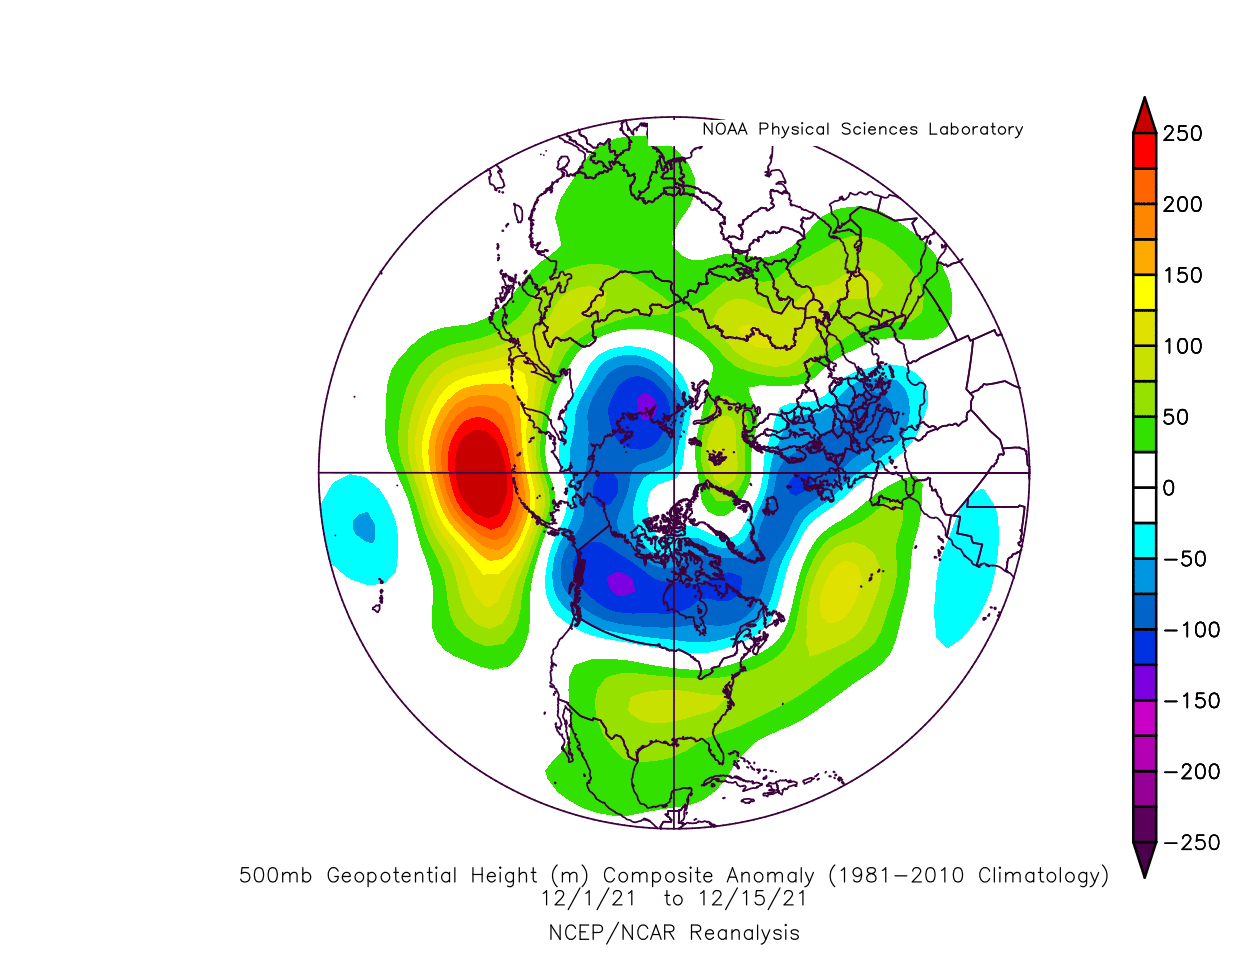 weather-forecast-update-winter-december-pressure-pattern-blocking-reanalysis